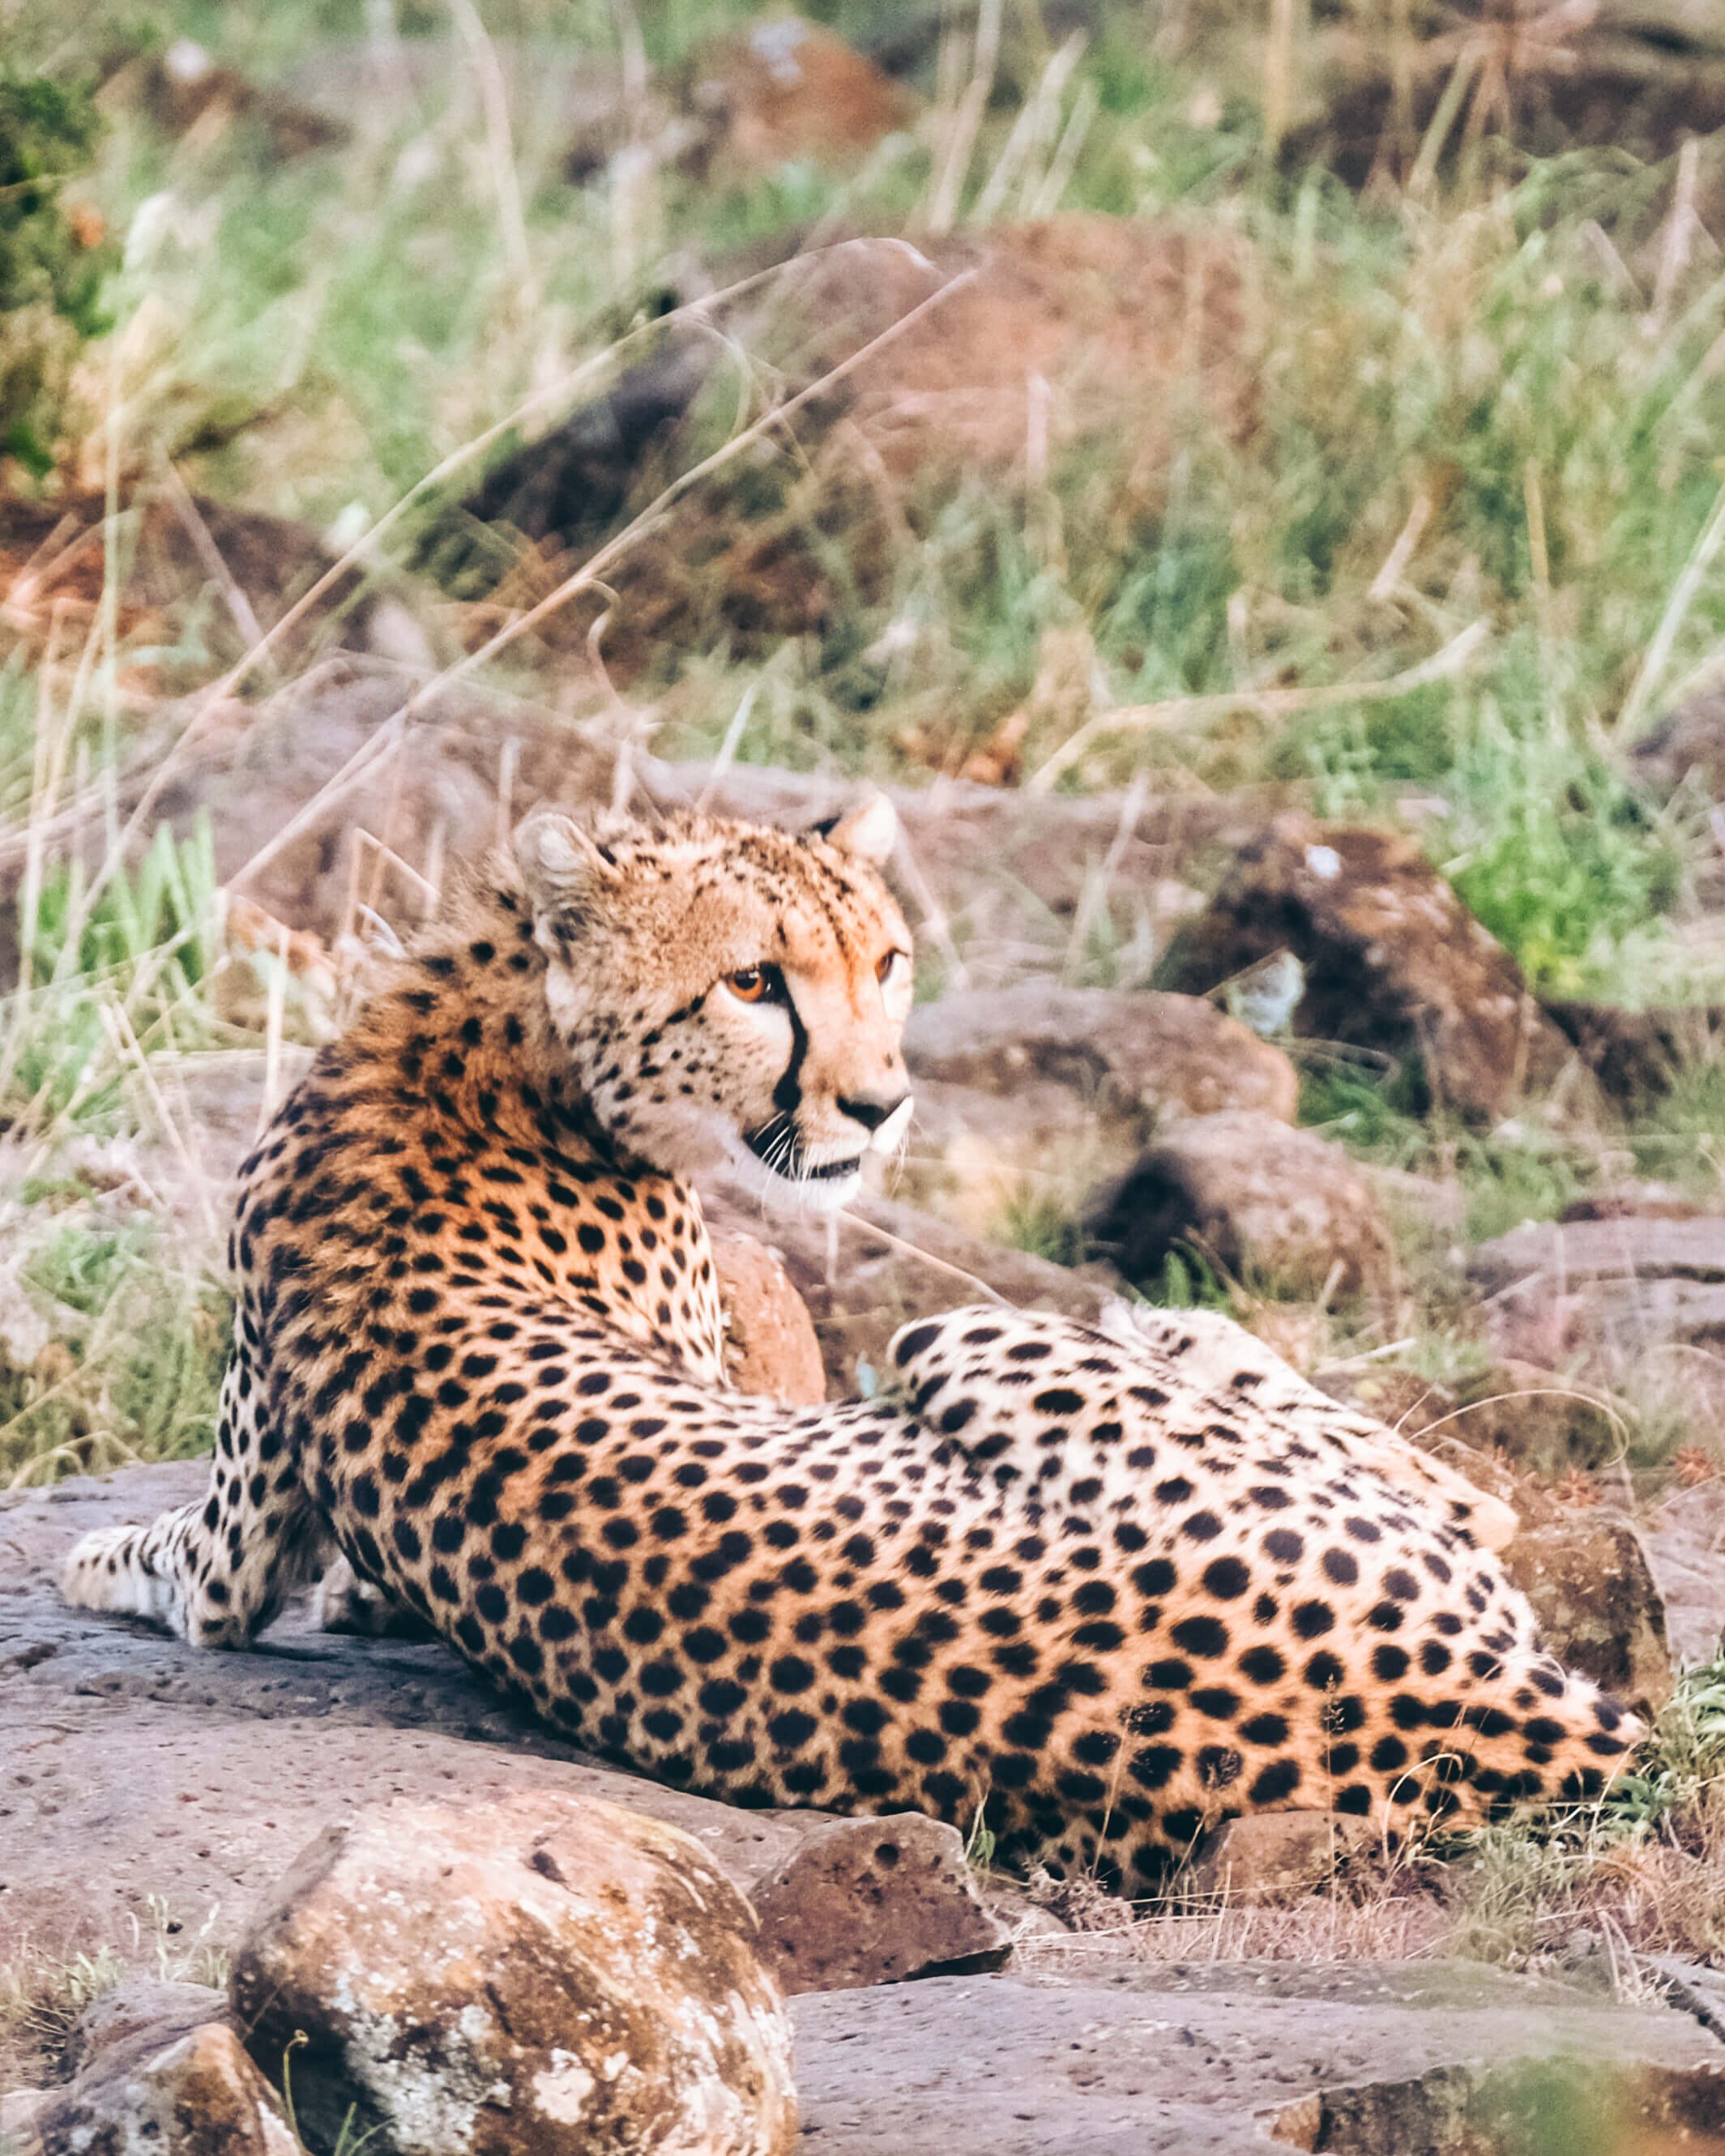 Close up shot of cheetah on safari